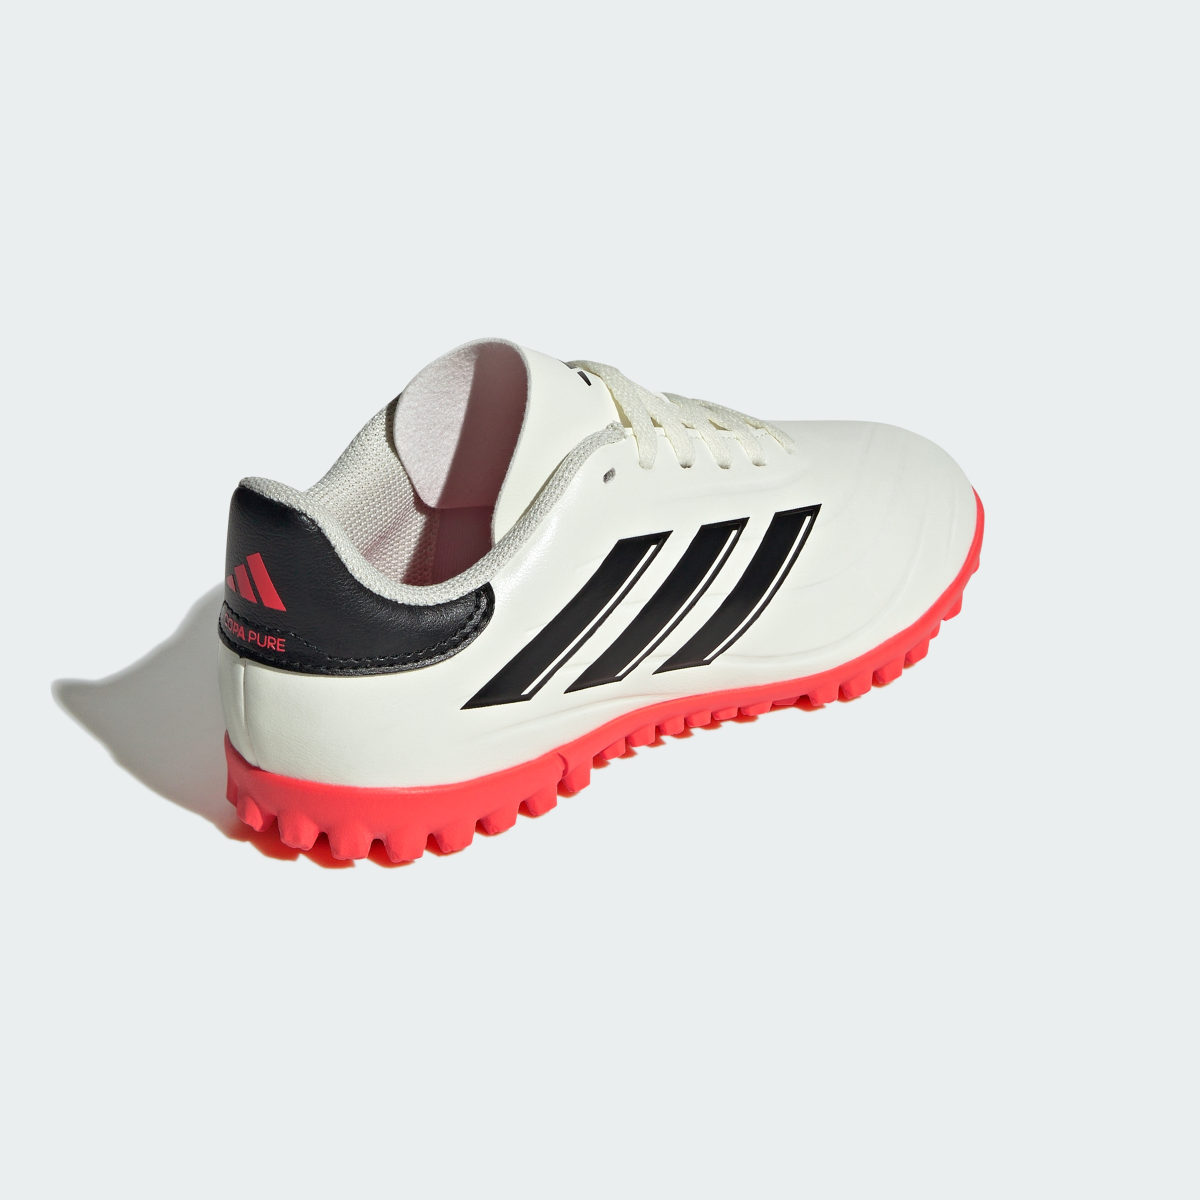 Adidas Copa Pure II Club Turf Boots. 6